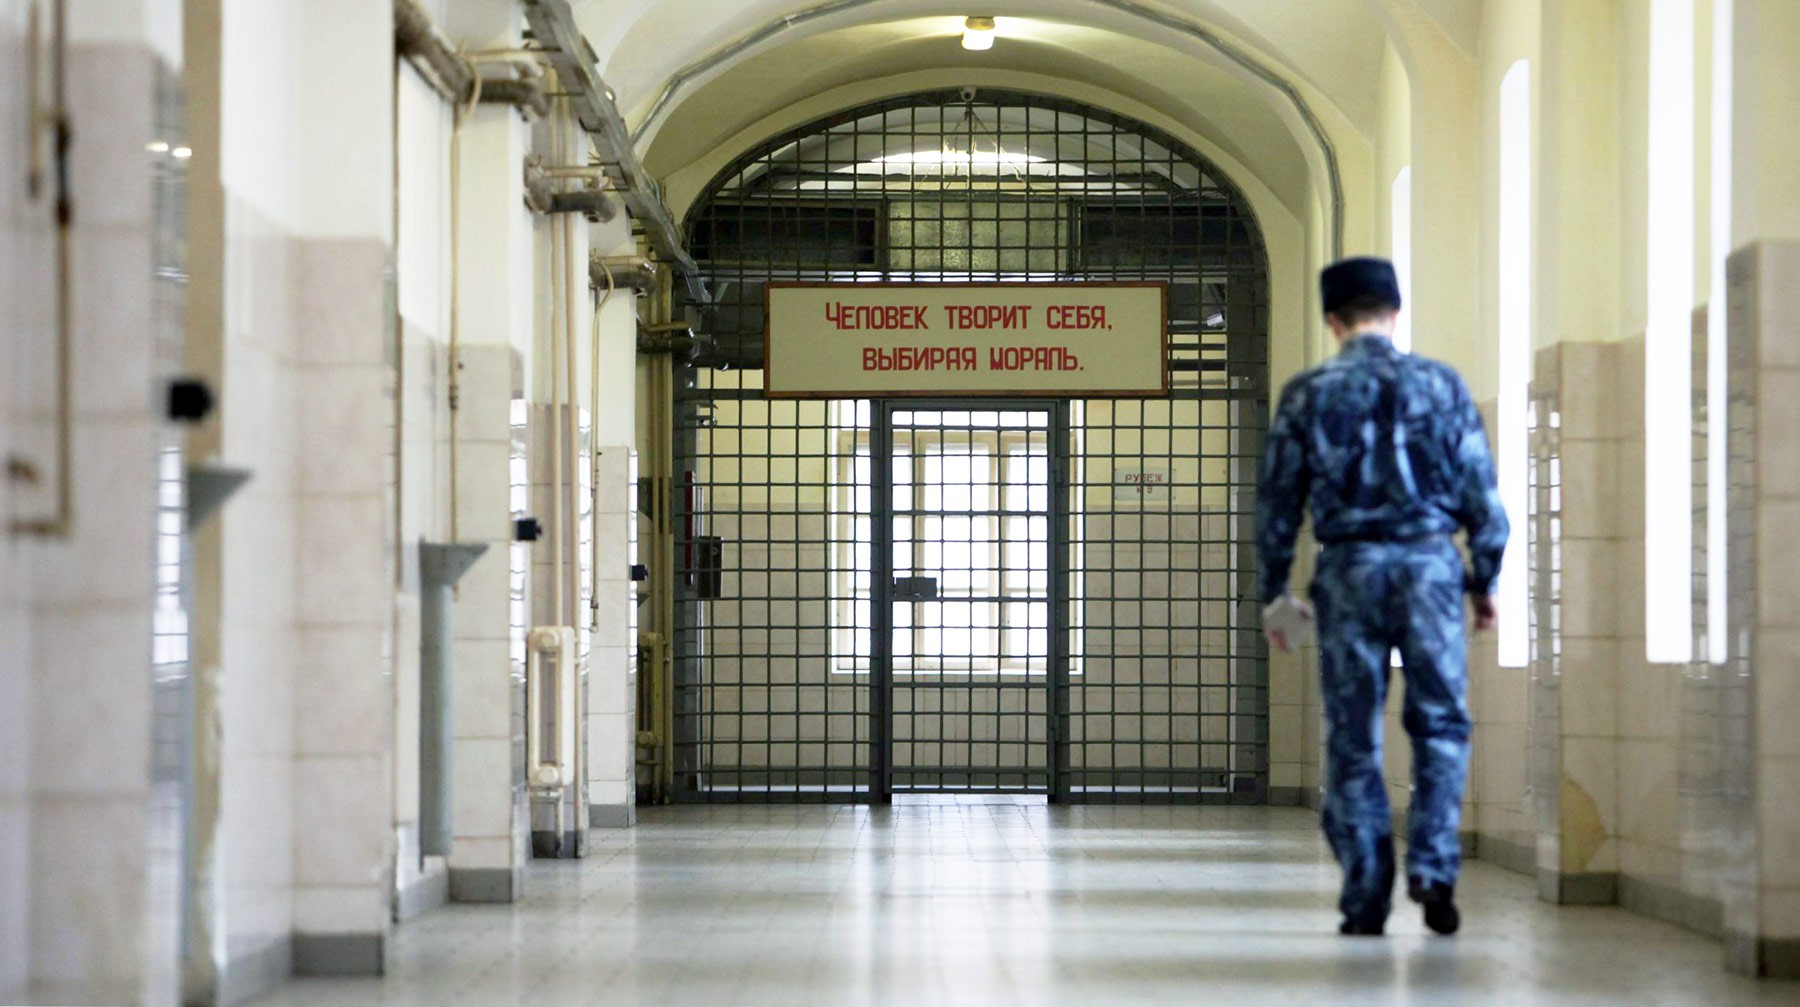 Dailystorm - Проверка колоний во Владимирской области выявила новые случаи пыток заключенных